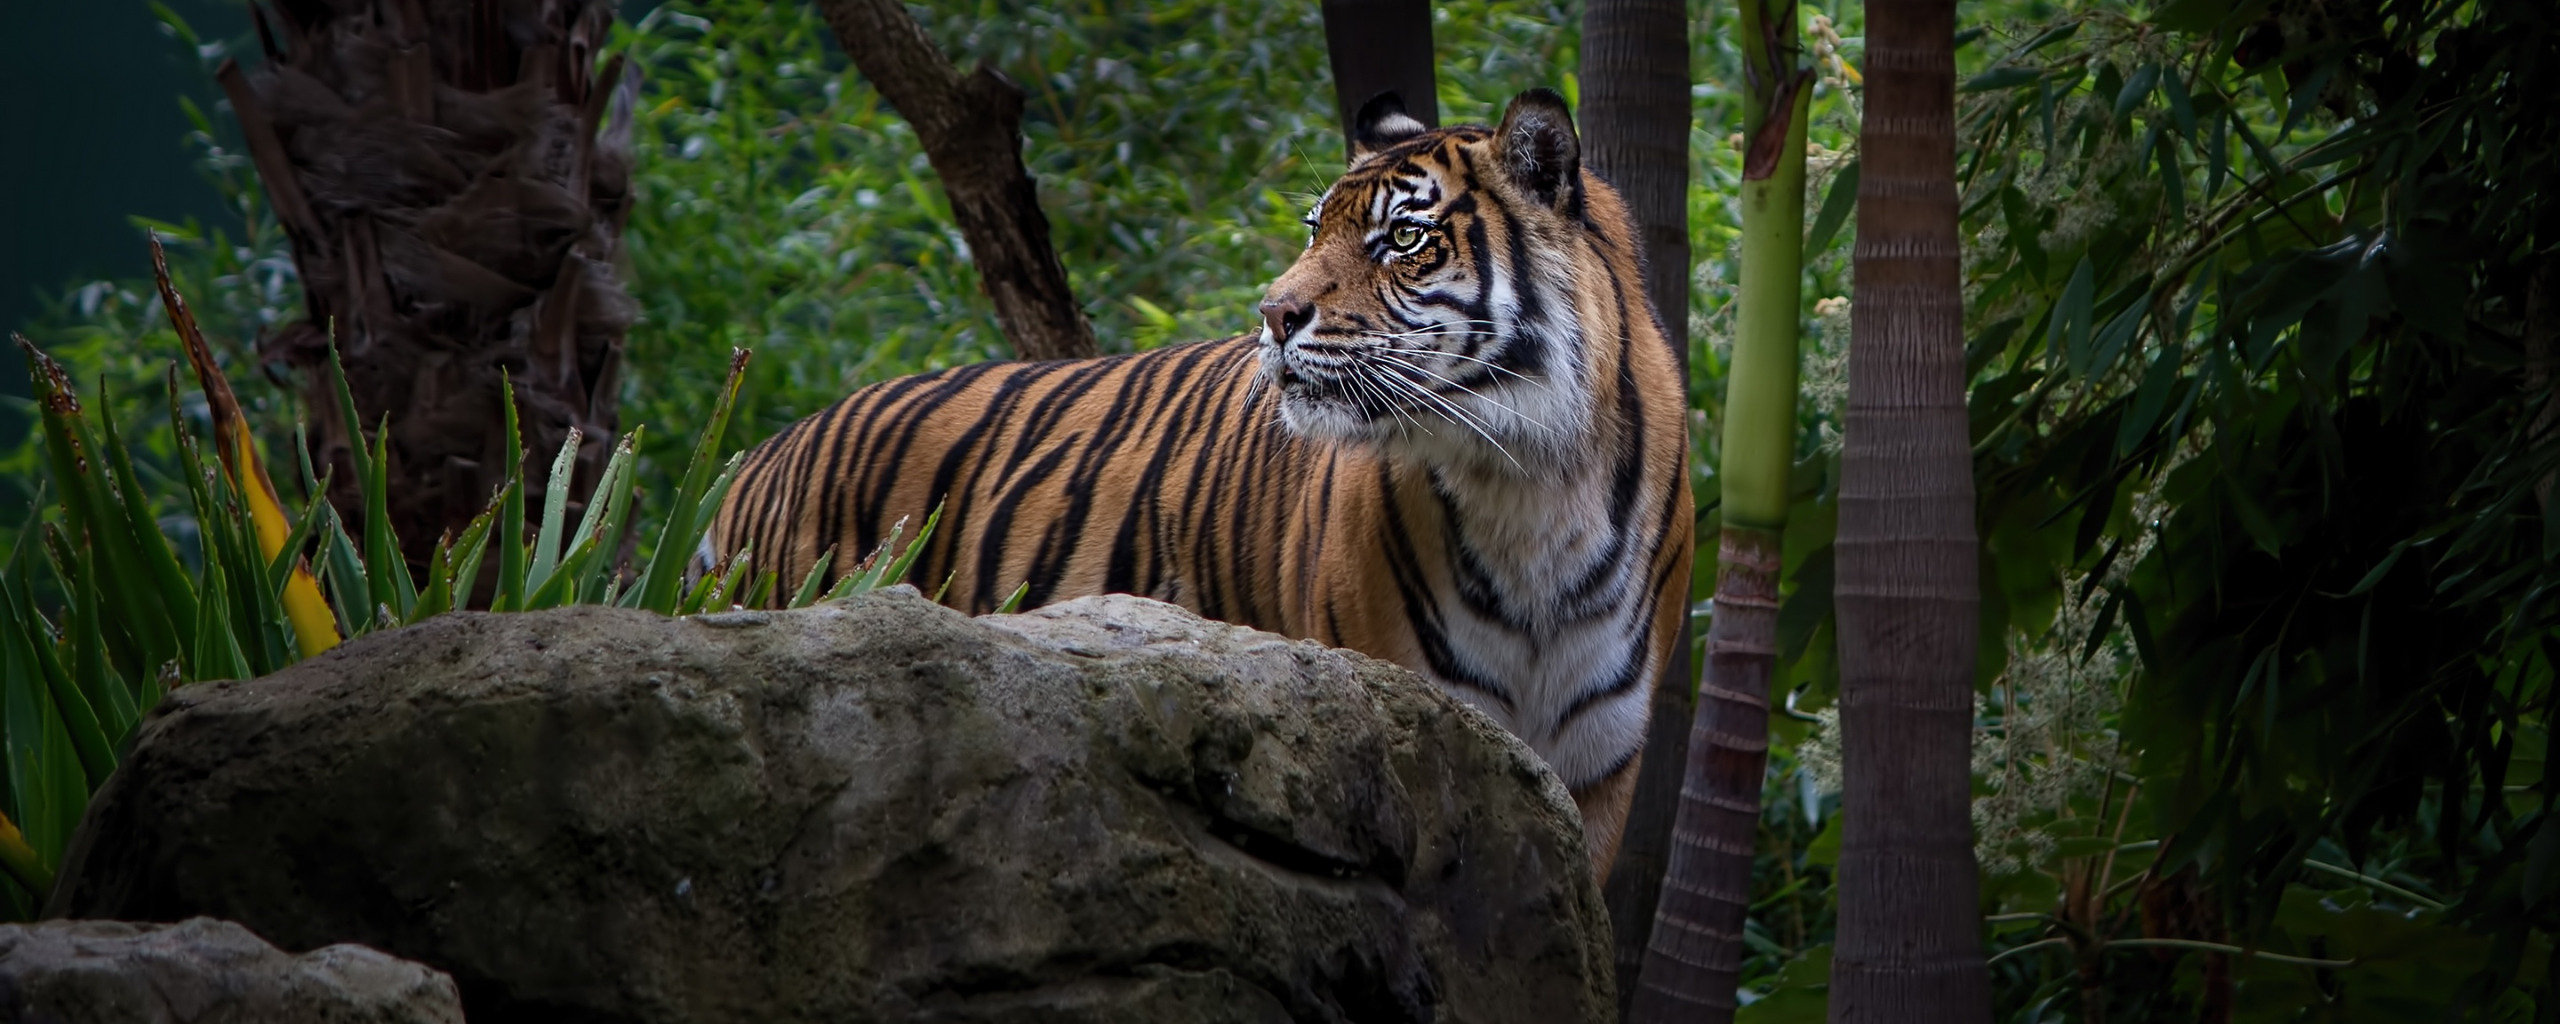 Wild animals as pets essay. Животные джунглей. Тигр в тропиках. Тигр в джунглях. Тигр в тропическом лесу.